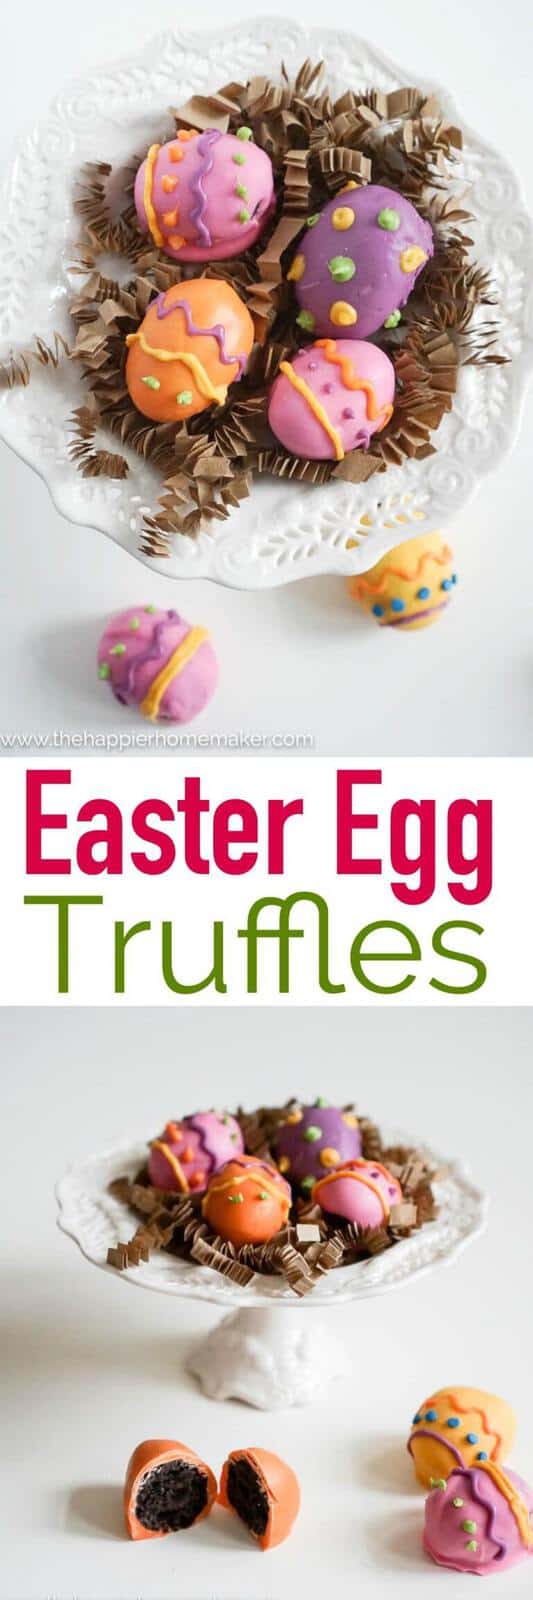 Easter Egg Truffles